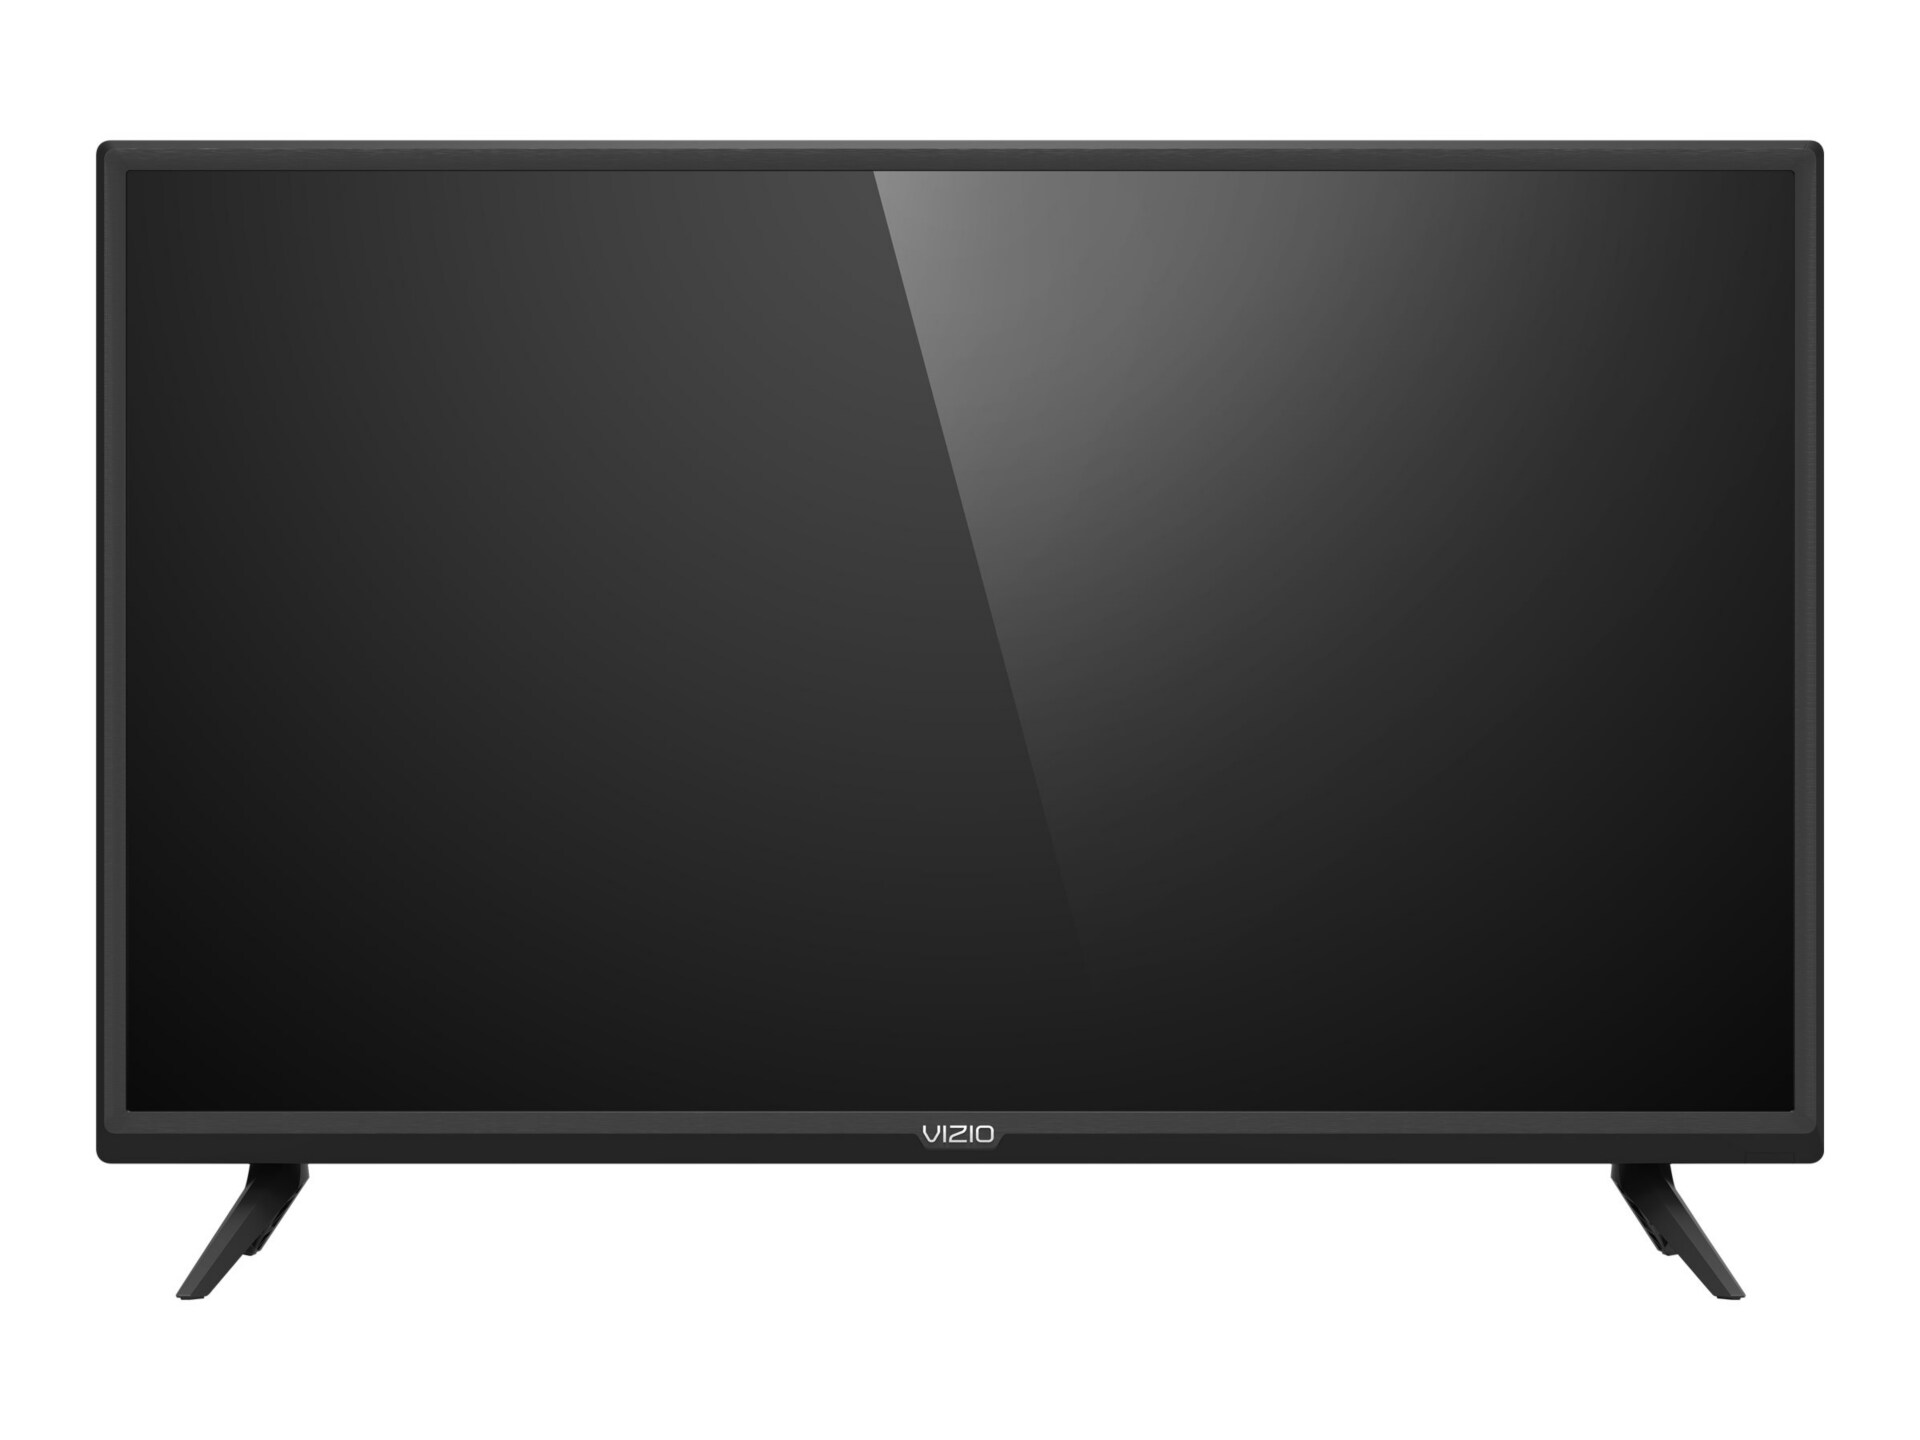 Vizio D32H-G9 32" Class (31.5" viewable) LED TV - HD